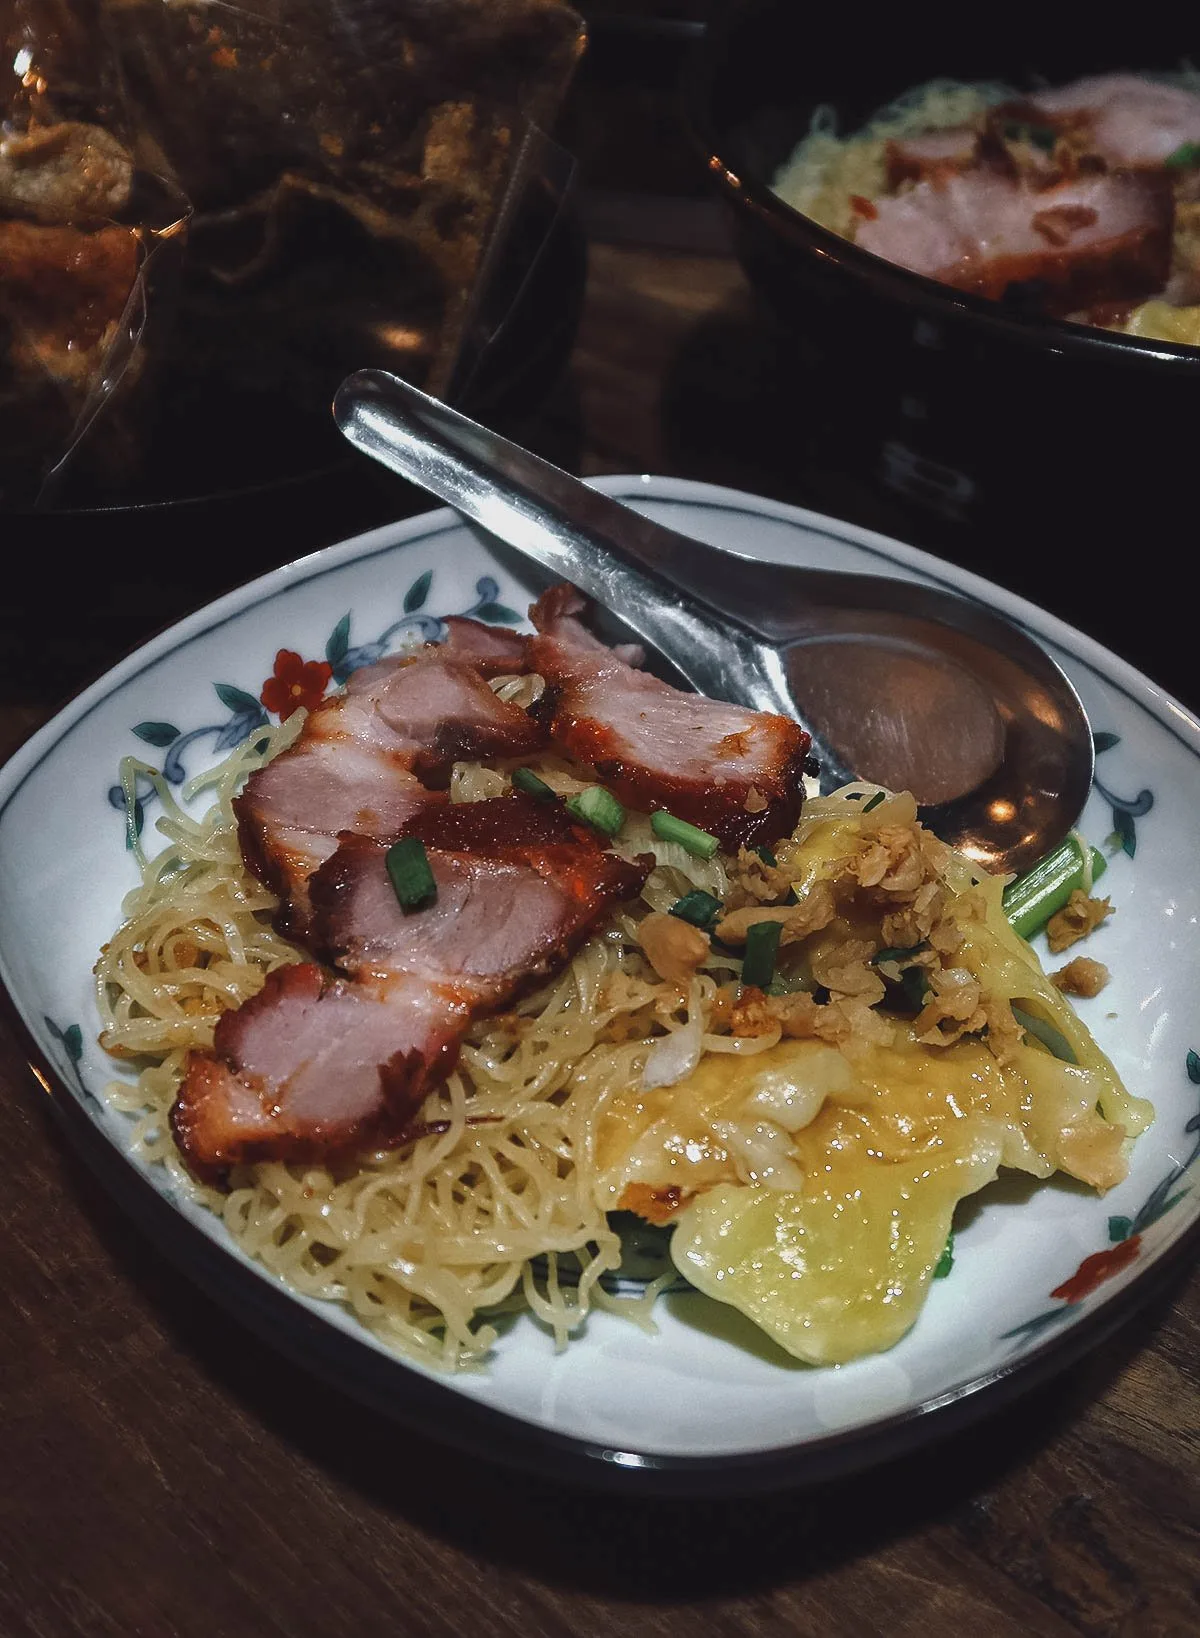 Barbecued pork over noodles in Bangkok, Thailand